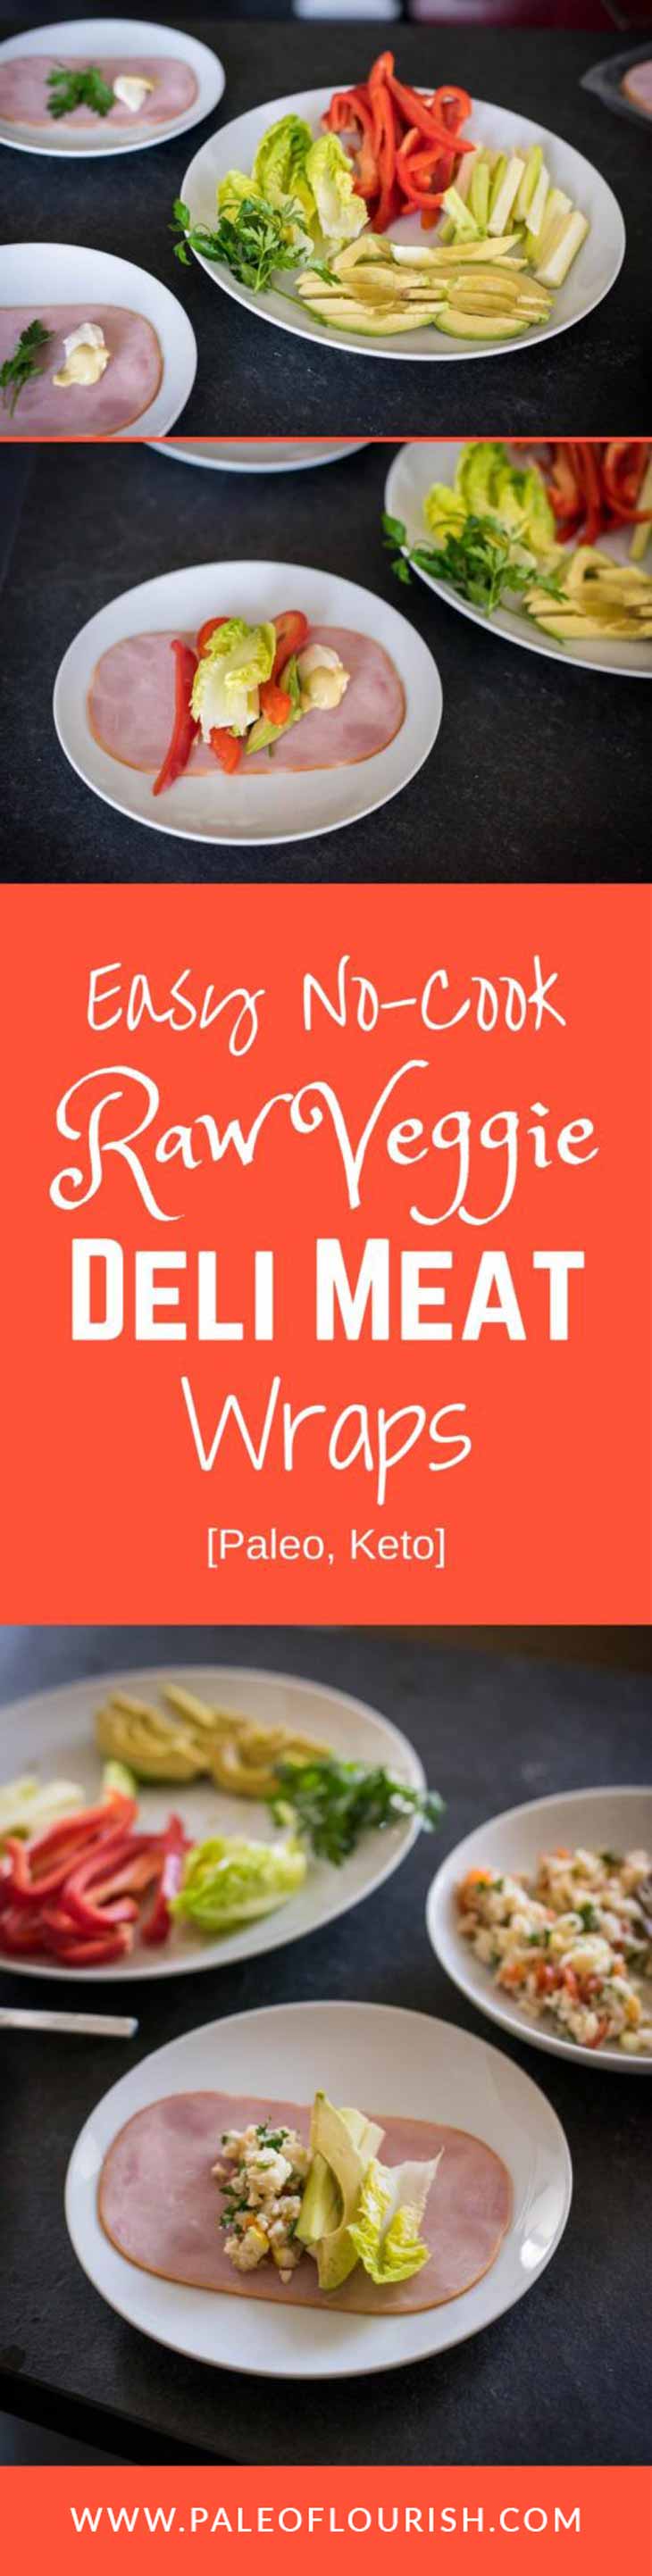 Easy No-Cook Raw Veggie Deli Meat Wraps [Paleo, Keto] #paleo #keto #deli #recipes -  https://paleoflourish.com/easy-no-cook-raw-veggie-deli-meat-wraps